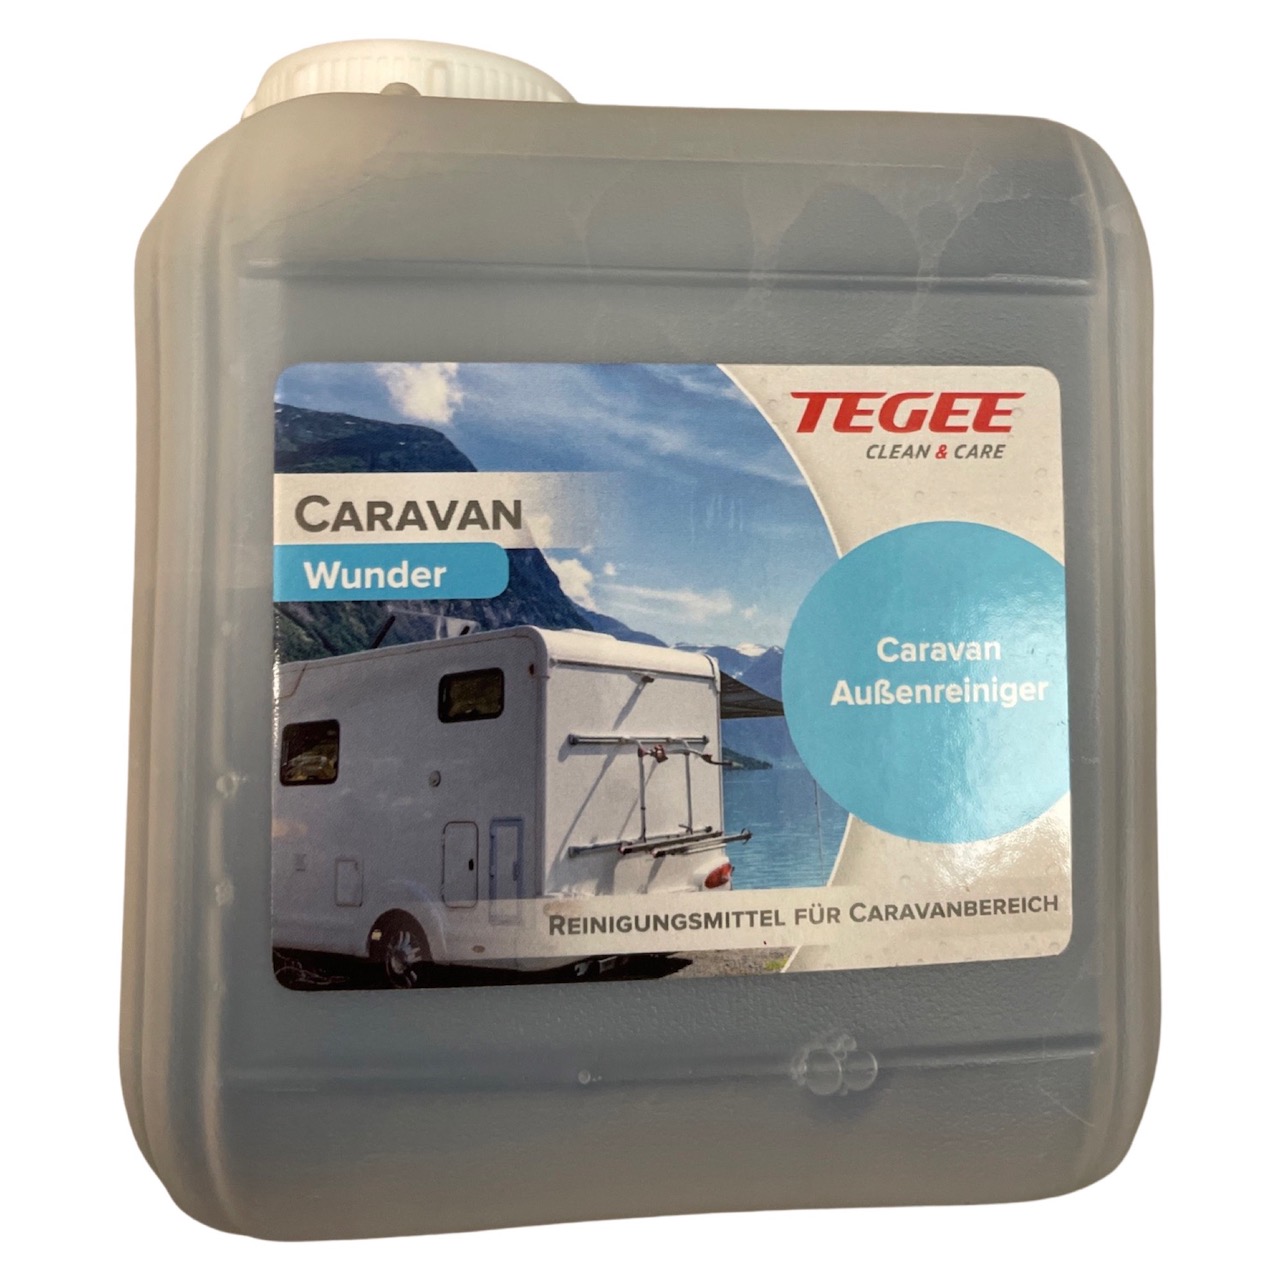 Tegee Caravan Wunder 1 Liter